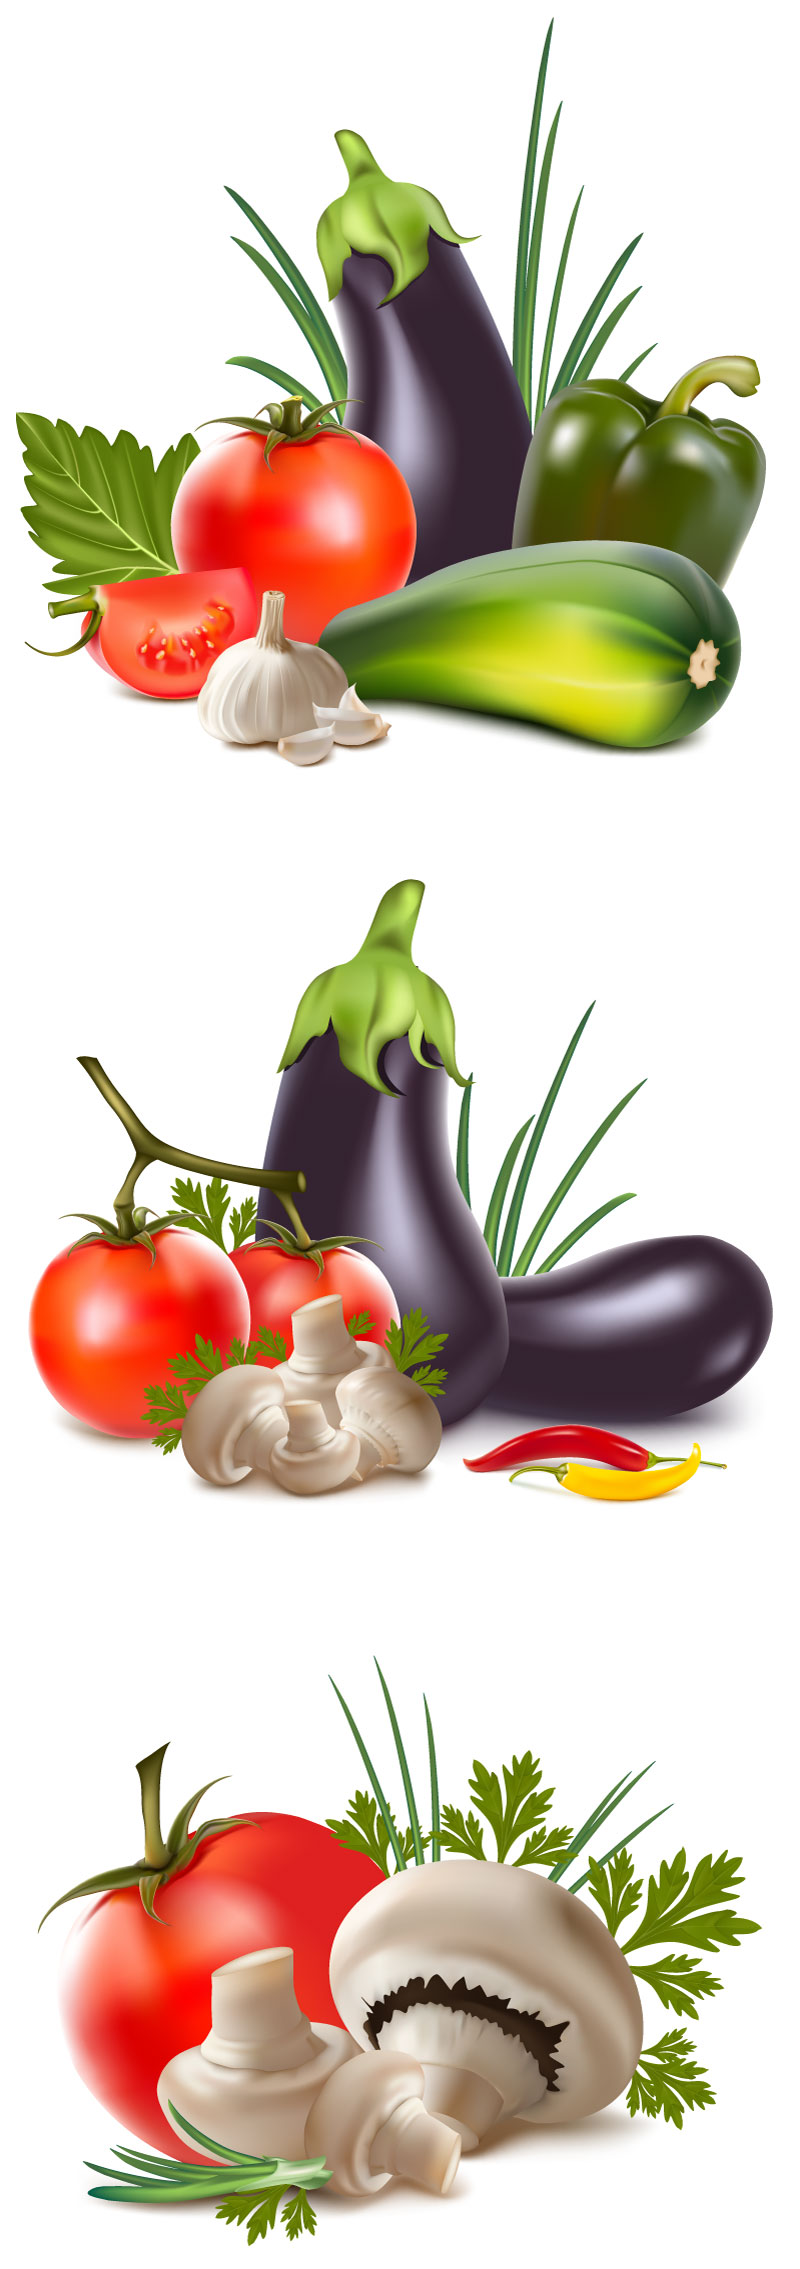 照片级逼真蔬菜合集图形AI矢量